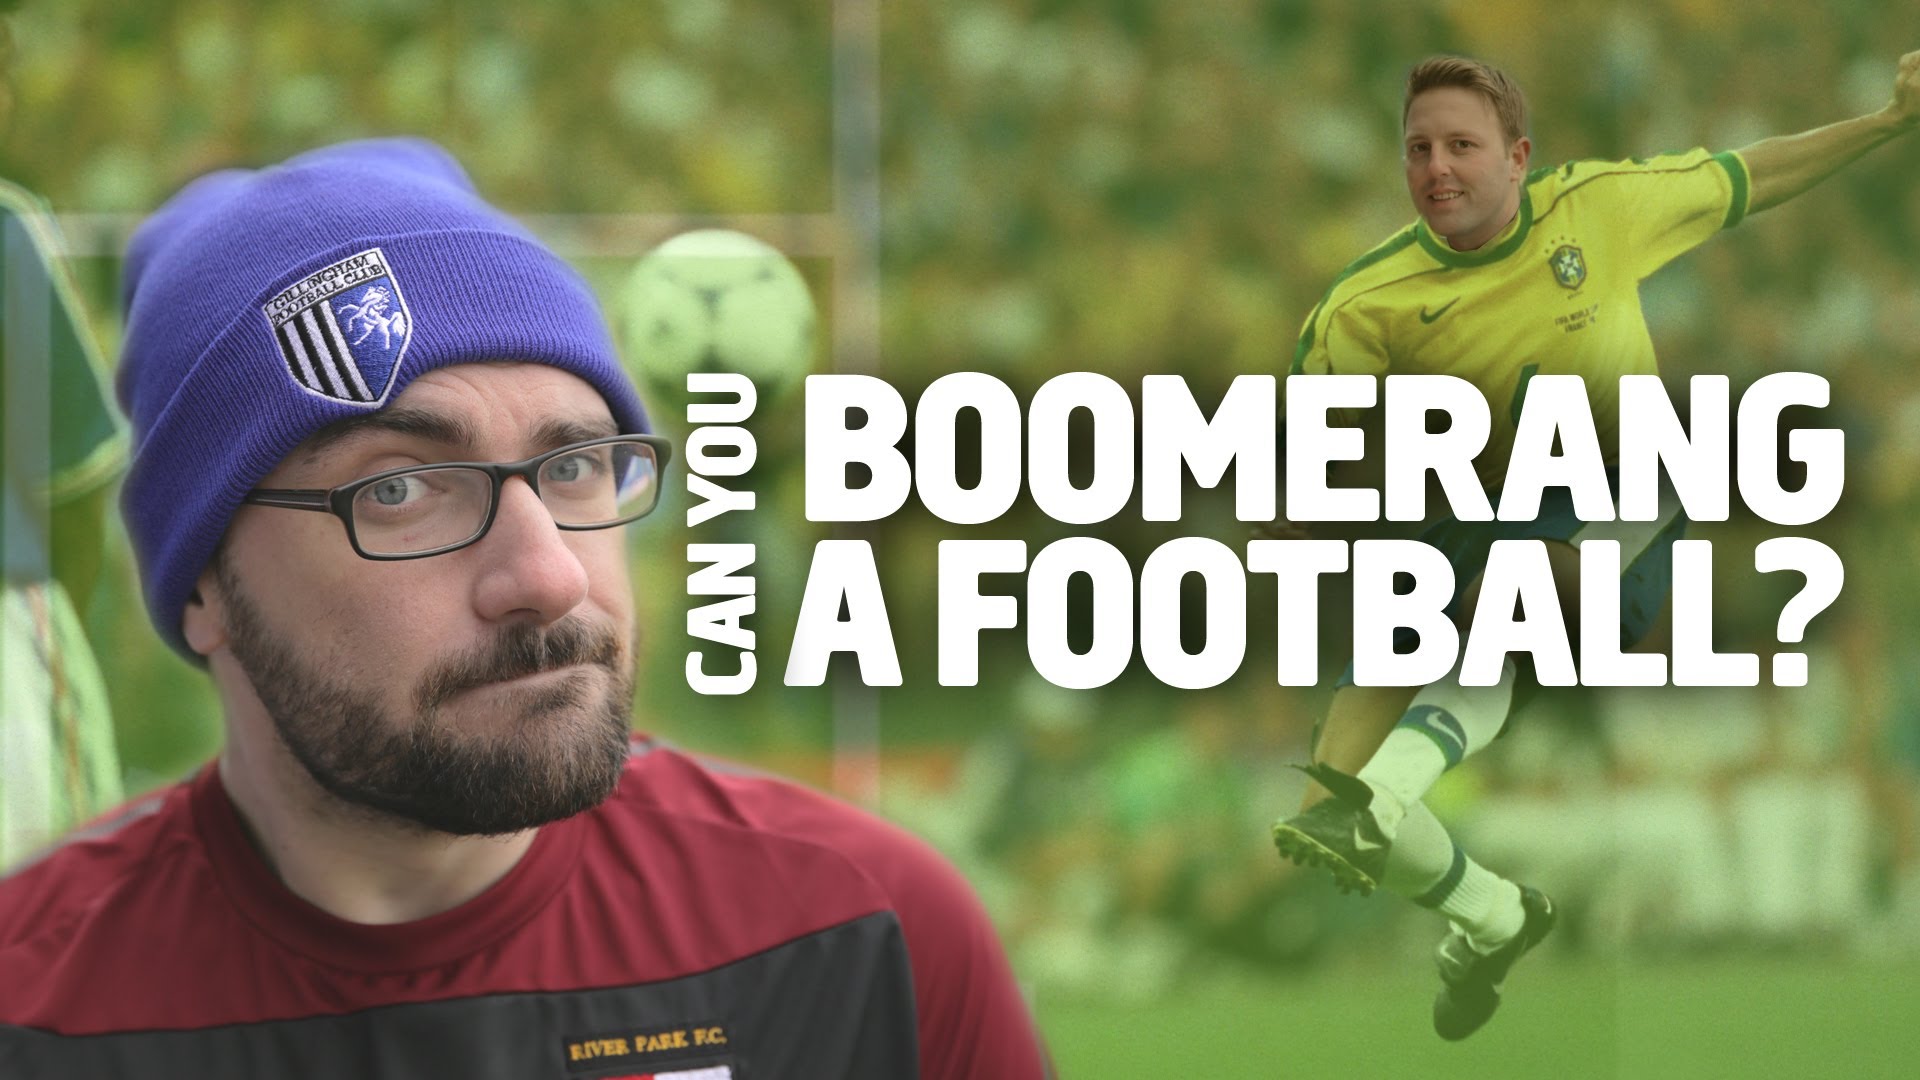 Can You Boomerang A Football?